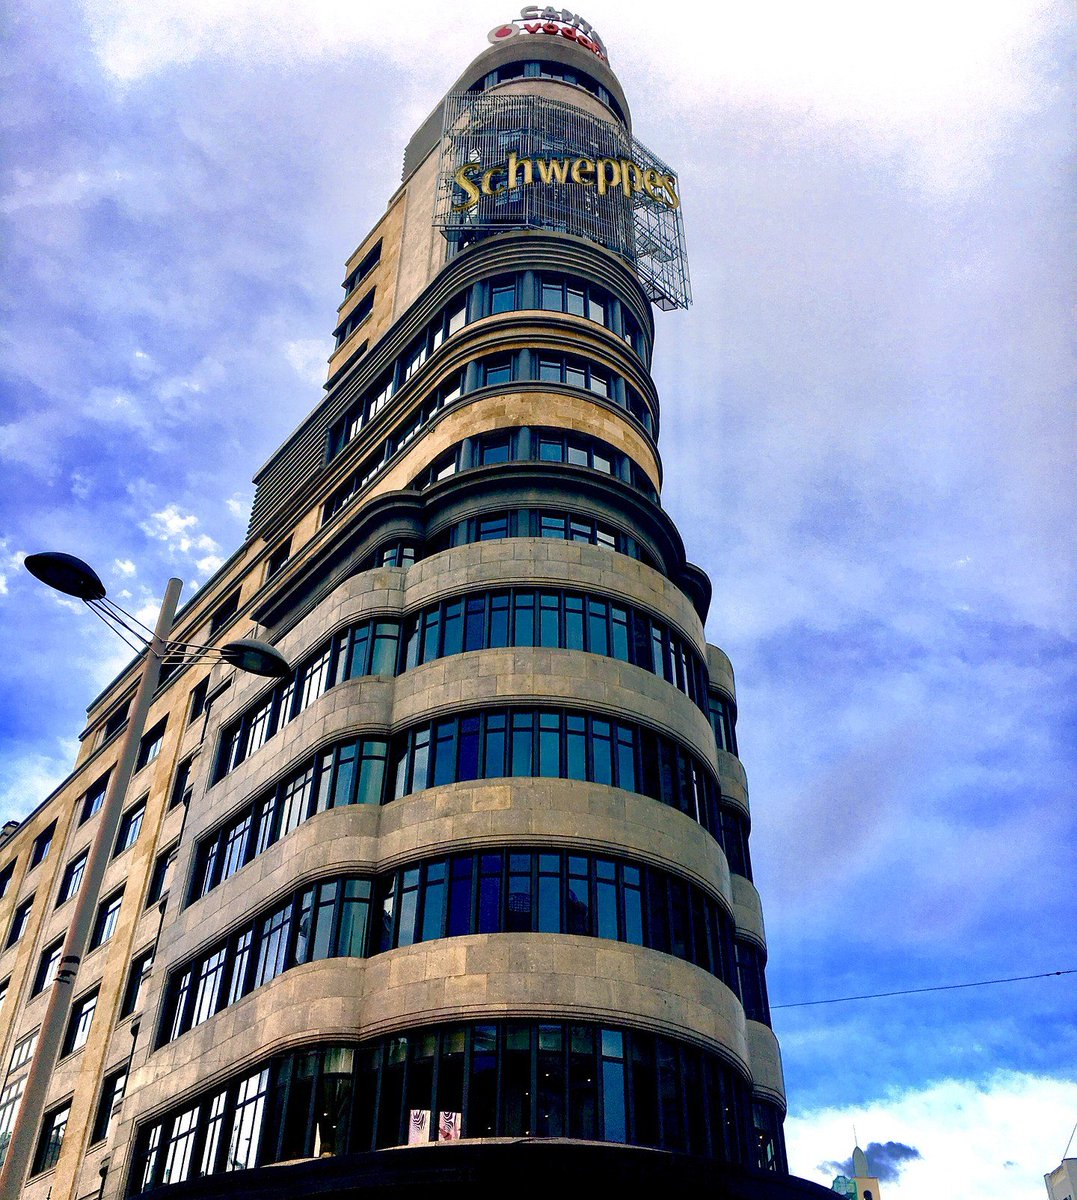 ¡Dichosos los ojos! Cada vez son más los emblemas de Madrid sueltos por la calle… ¿Cuál es vuestro preferido? . . .